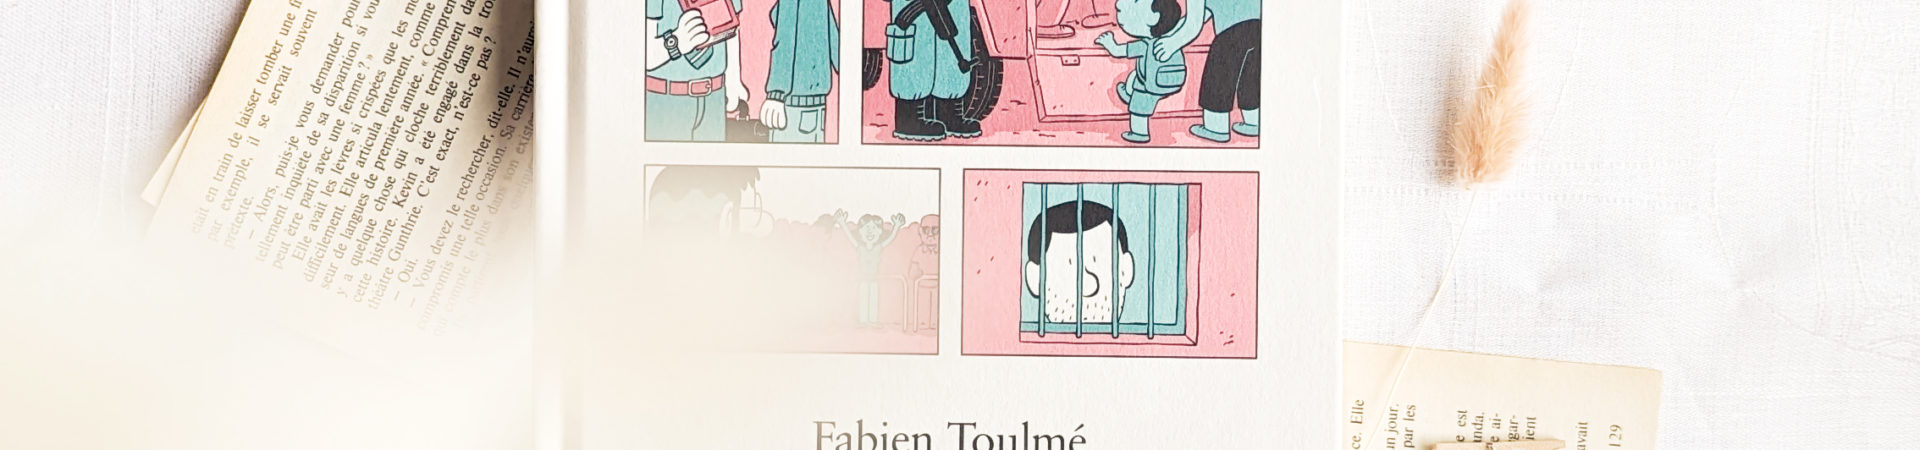 Inoubliables, la nouvelle série de Fabien Toulmé aux éditions Dupuis